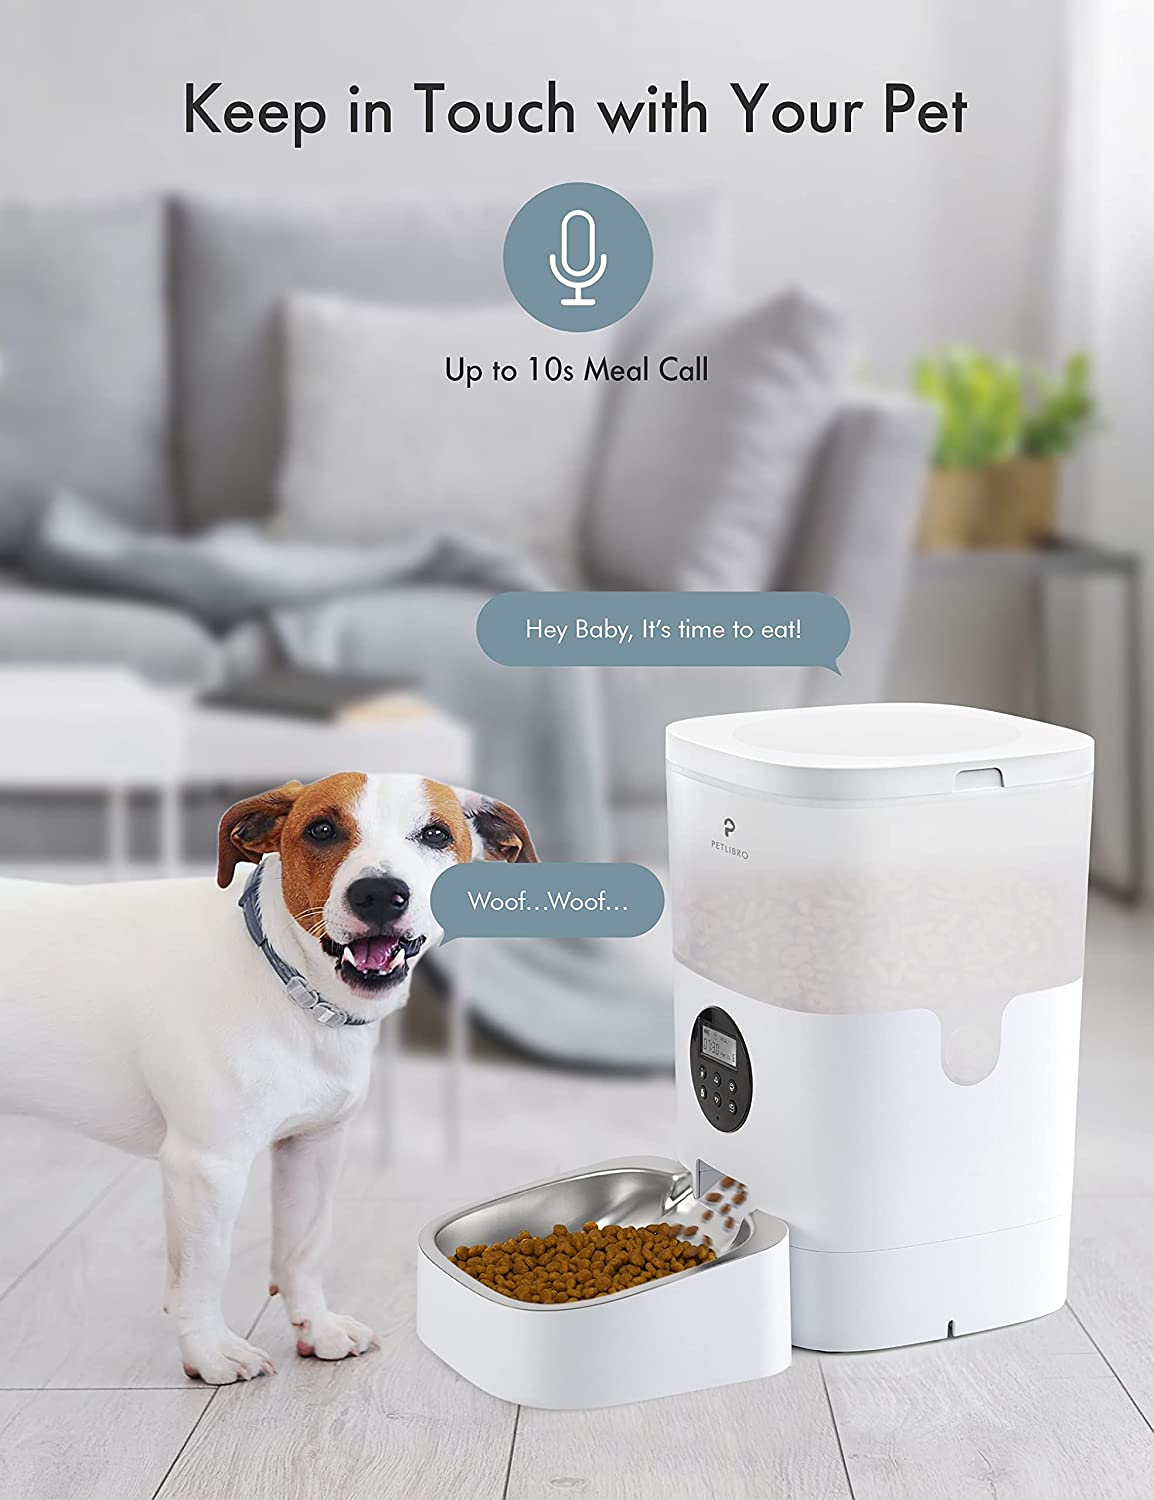 PETLIBRO - Alimentador Automático com Temporizador para gatos e cachorros